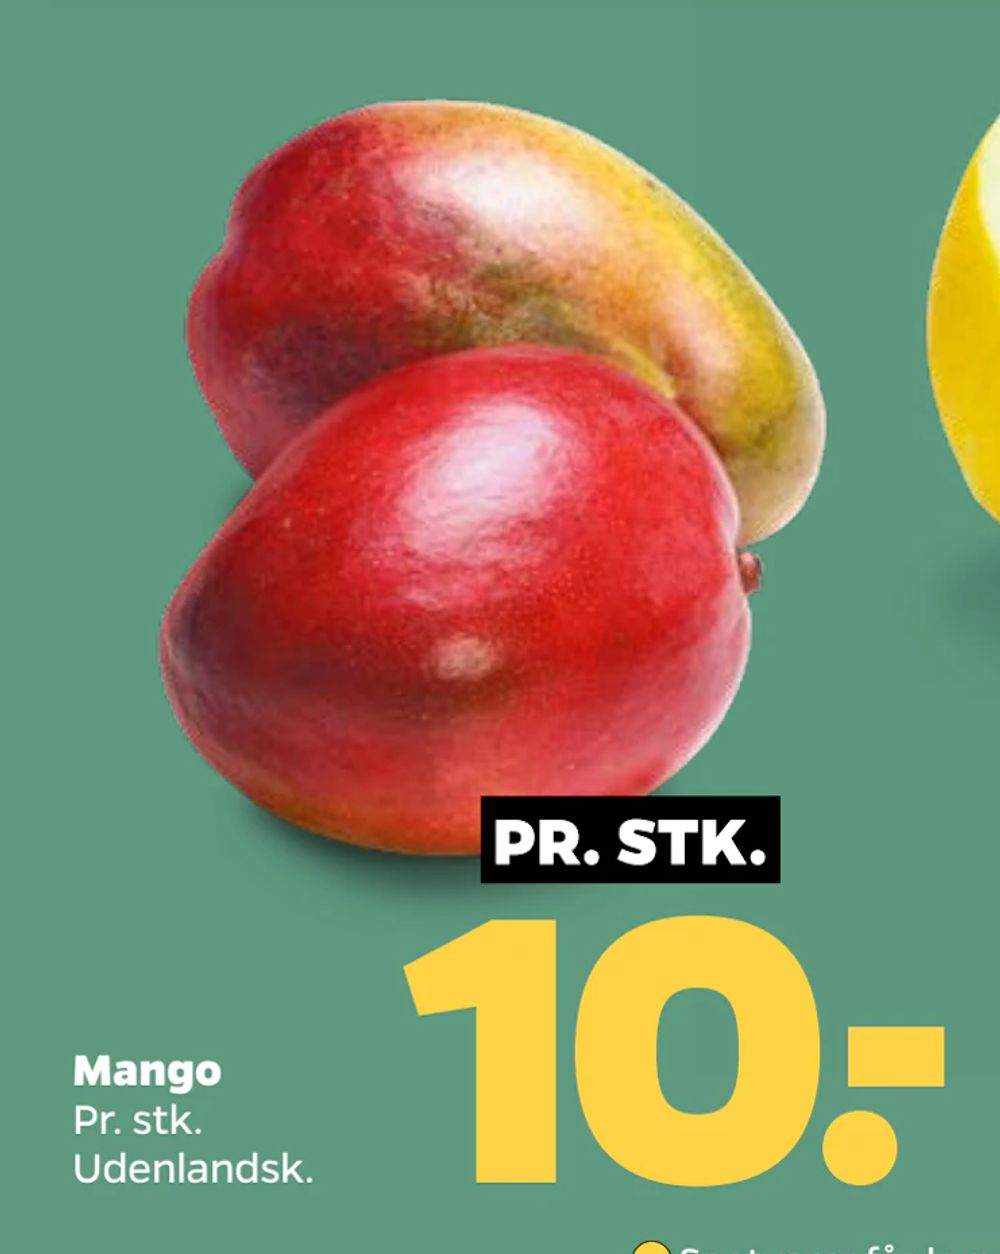 Tilbud på Mango fra Netto til 10 kr.